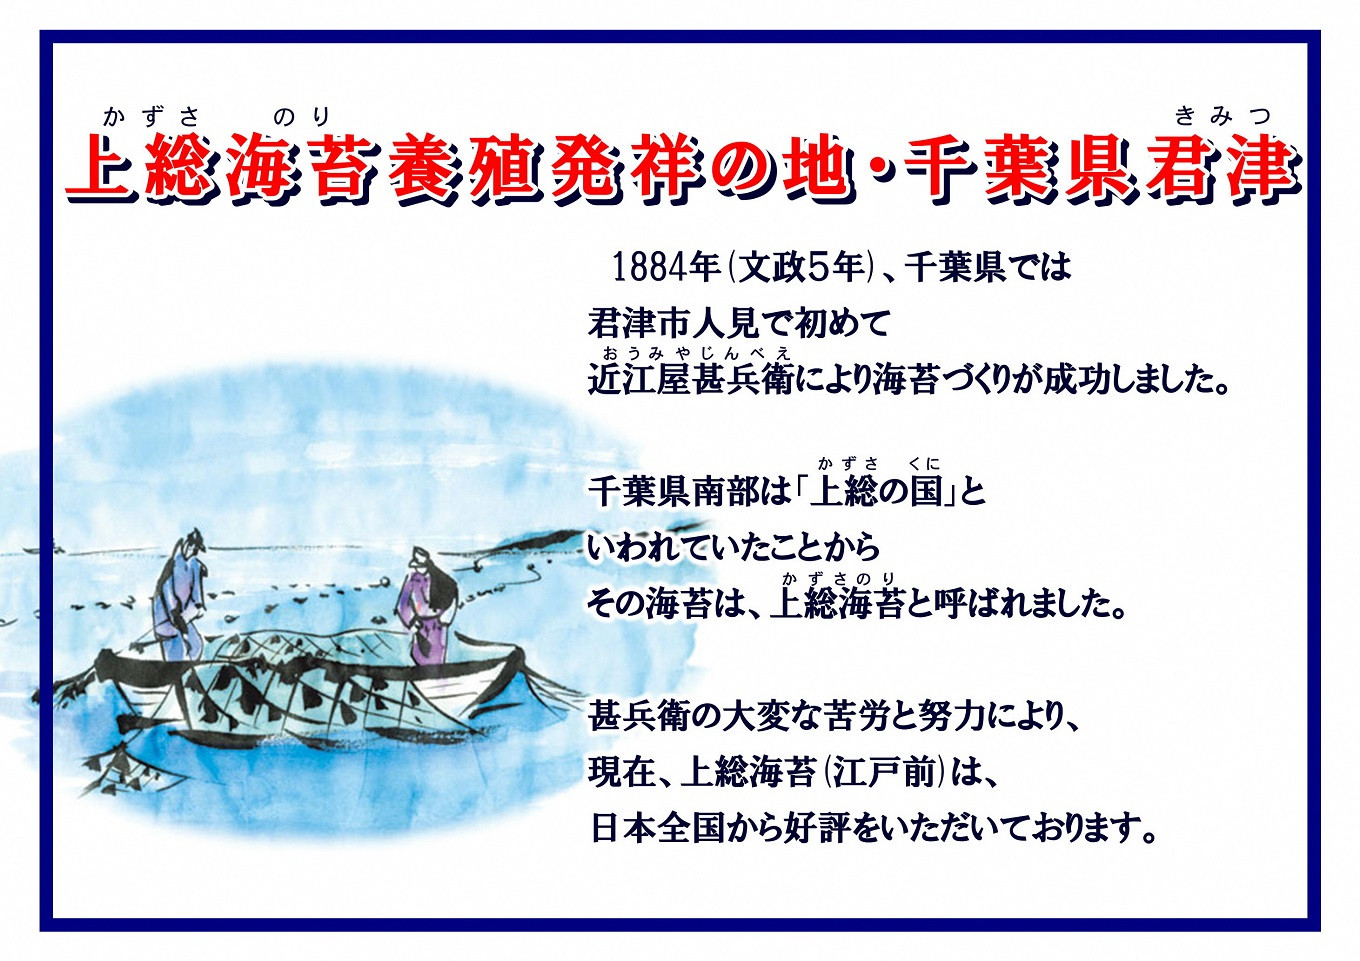 1822年(文政5年) 千葉県では初めて 君津市人見で近江屋甚兵衛(おうみやじんべえ)という人物により海苔づくりが成功しました。